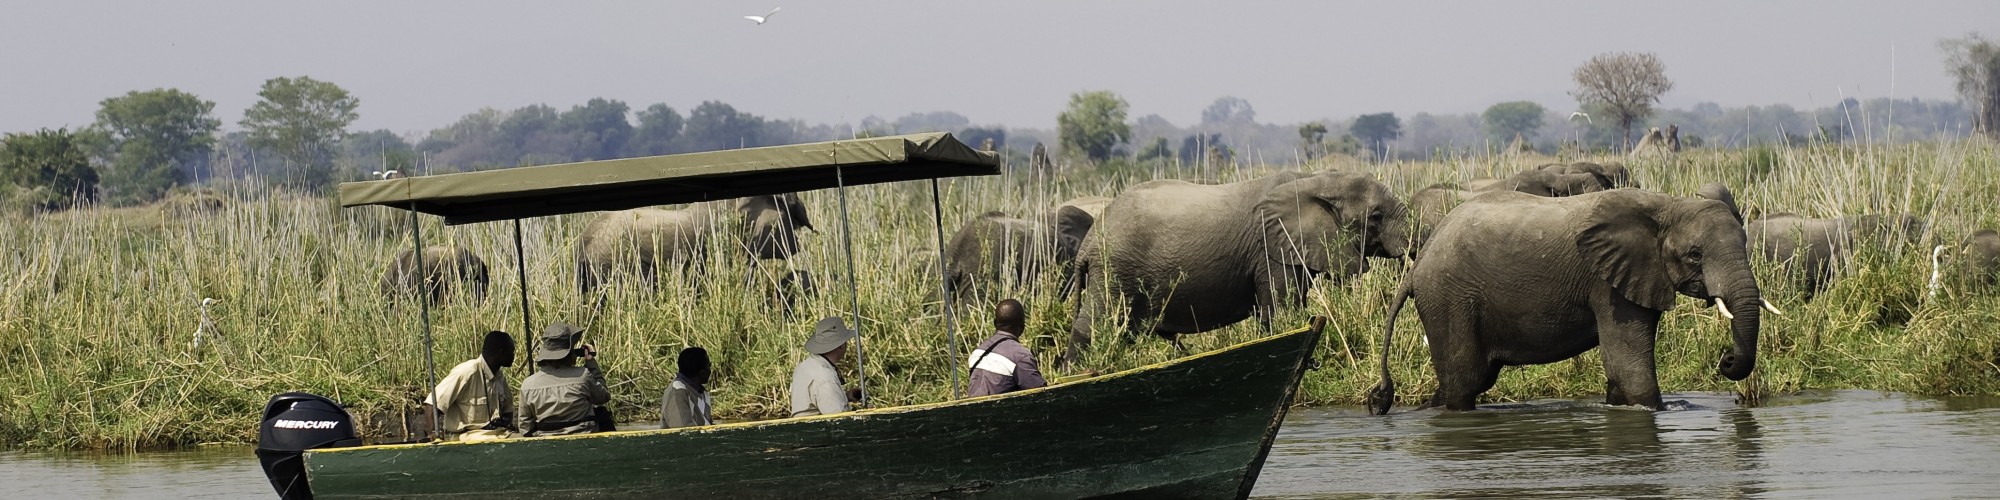 Malawi - Mvuu Lake Elephants